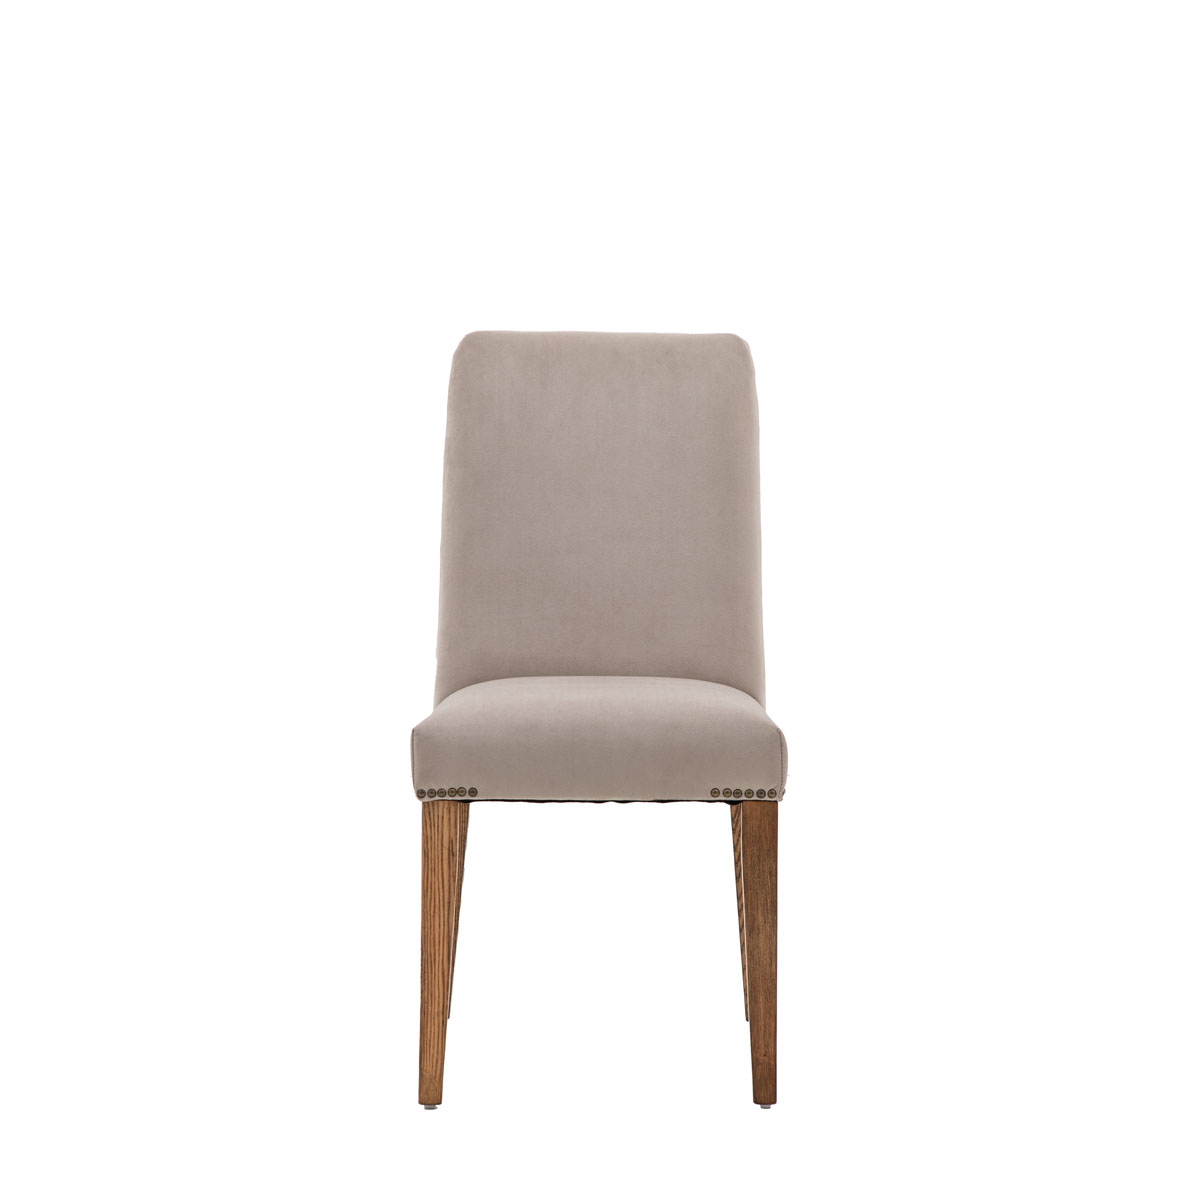 Highgrove Chair Dove Velvet (2pk)